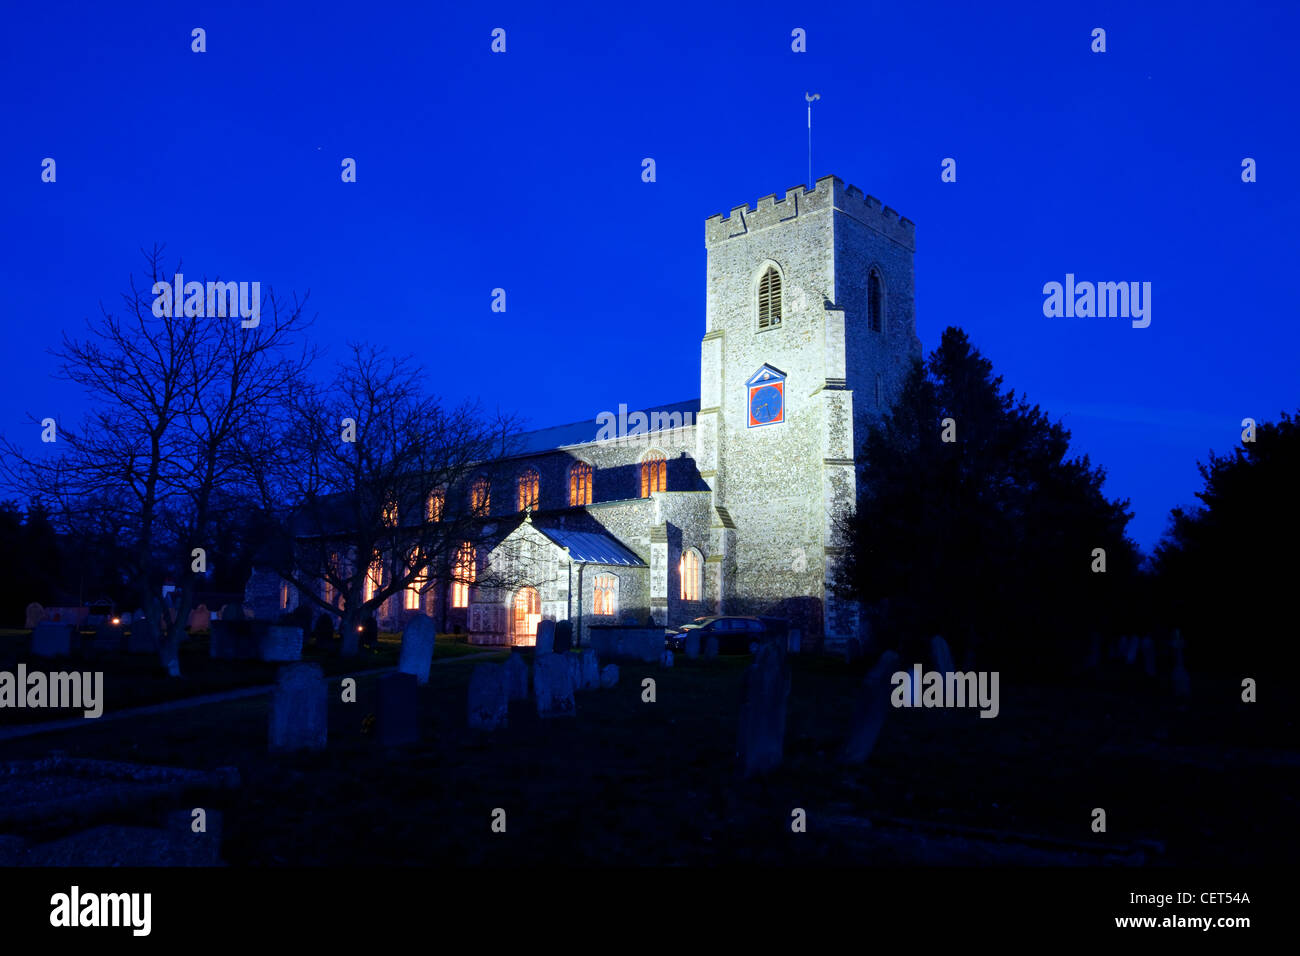 La chiesa di Saint Catherine, costruito nel XIV e XV secolo, illuminata di notte. Foto Stock